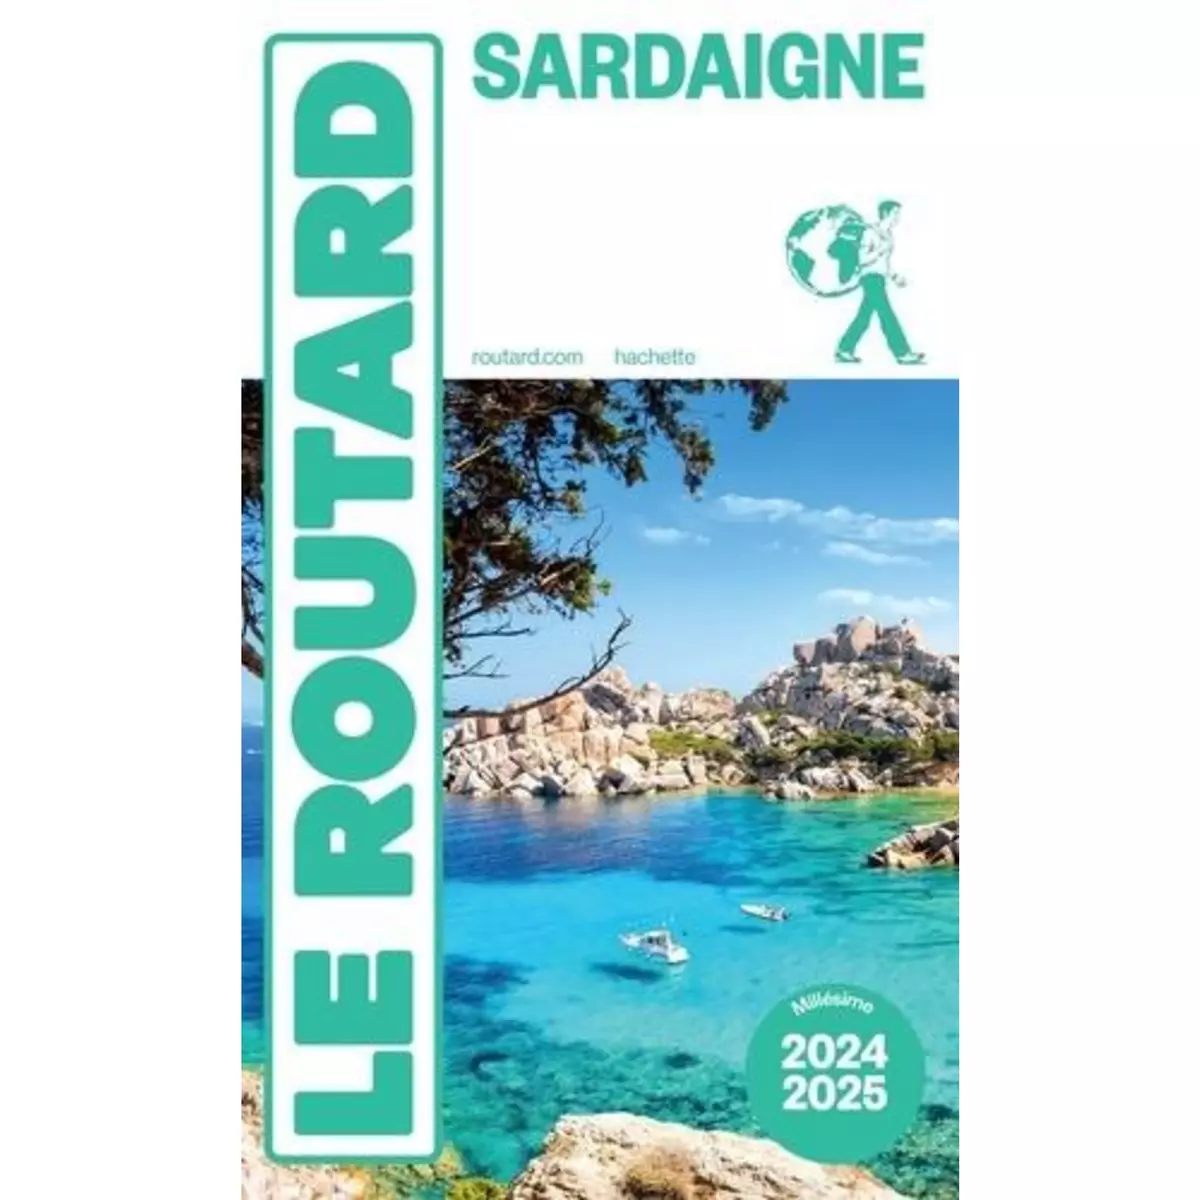  SARDAIGNE. EDITION 2024-2025, Le Routard